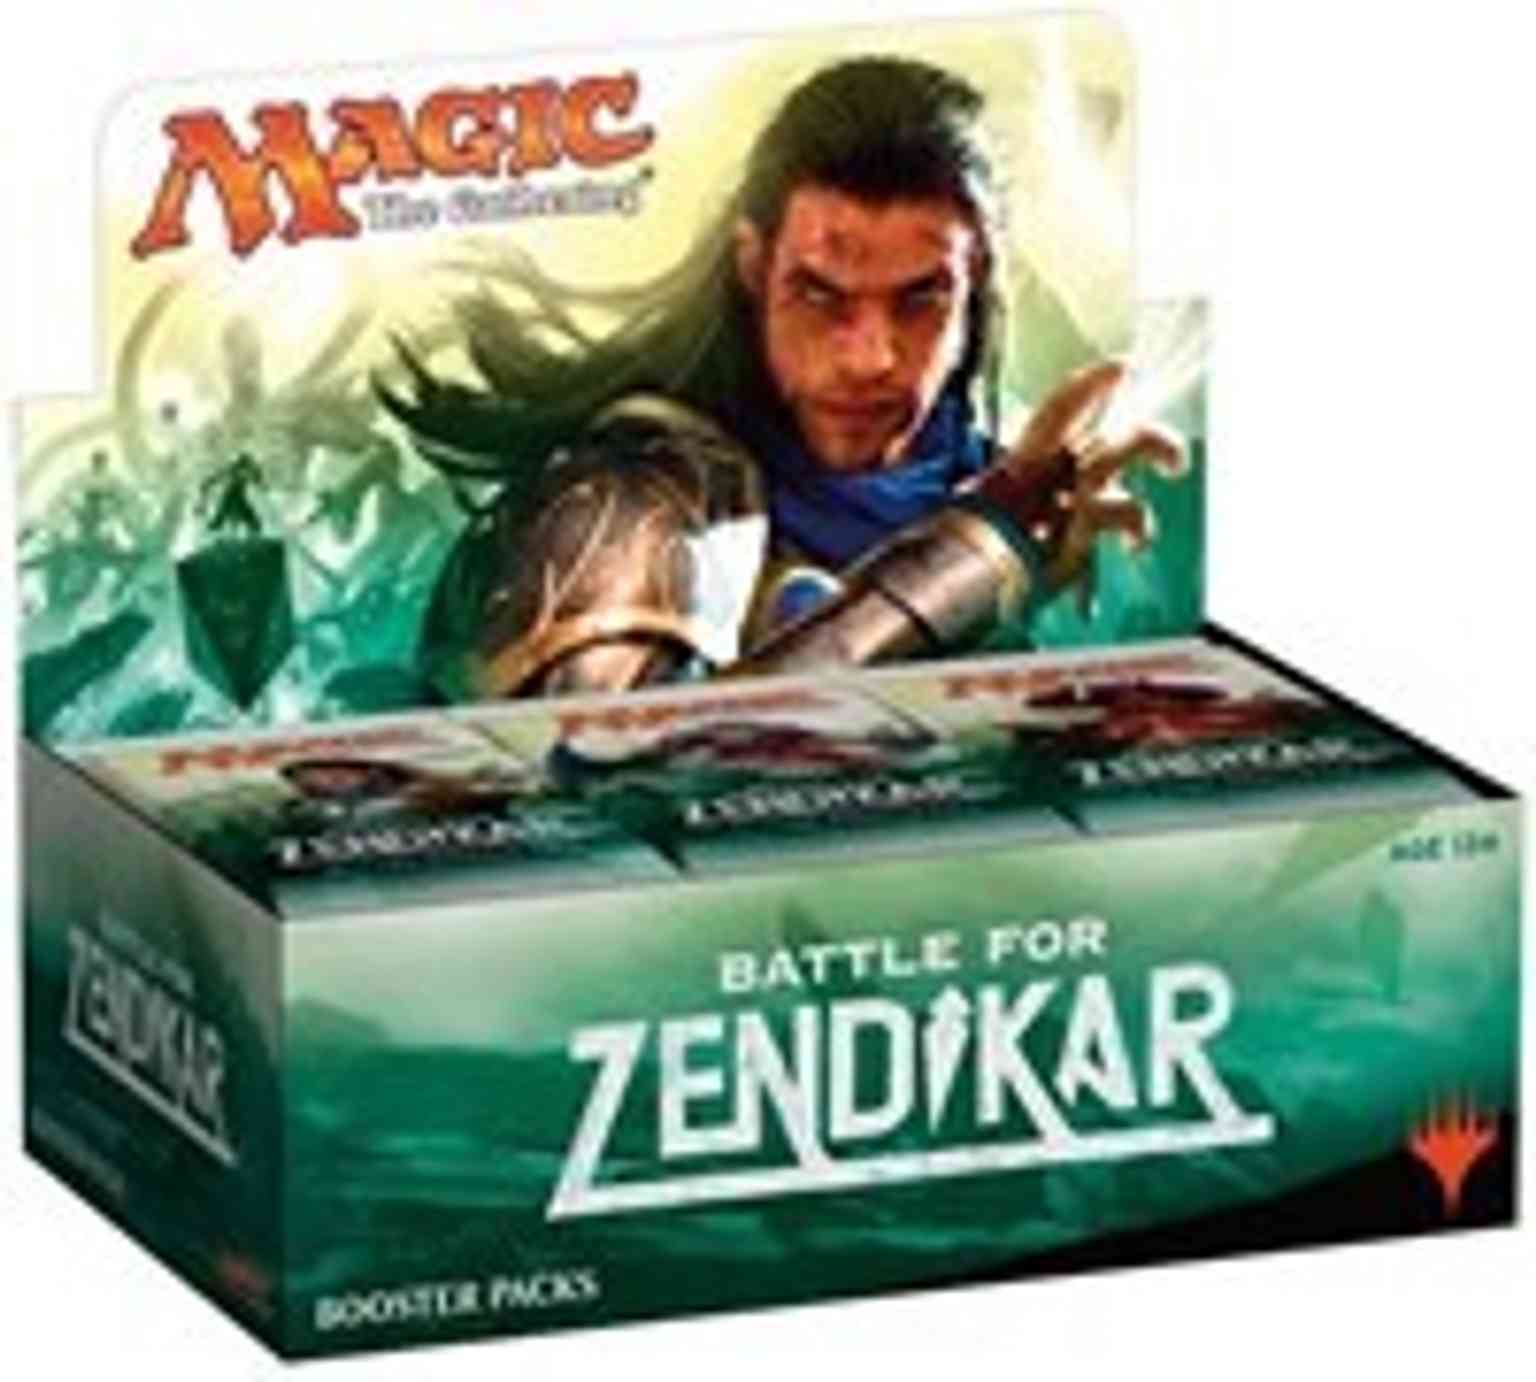 Battle for Zendikar - Booster Box magic card front